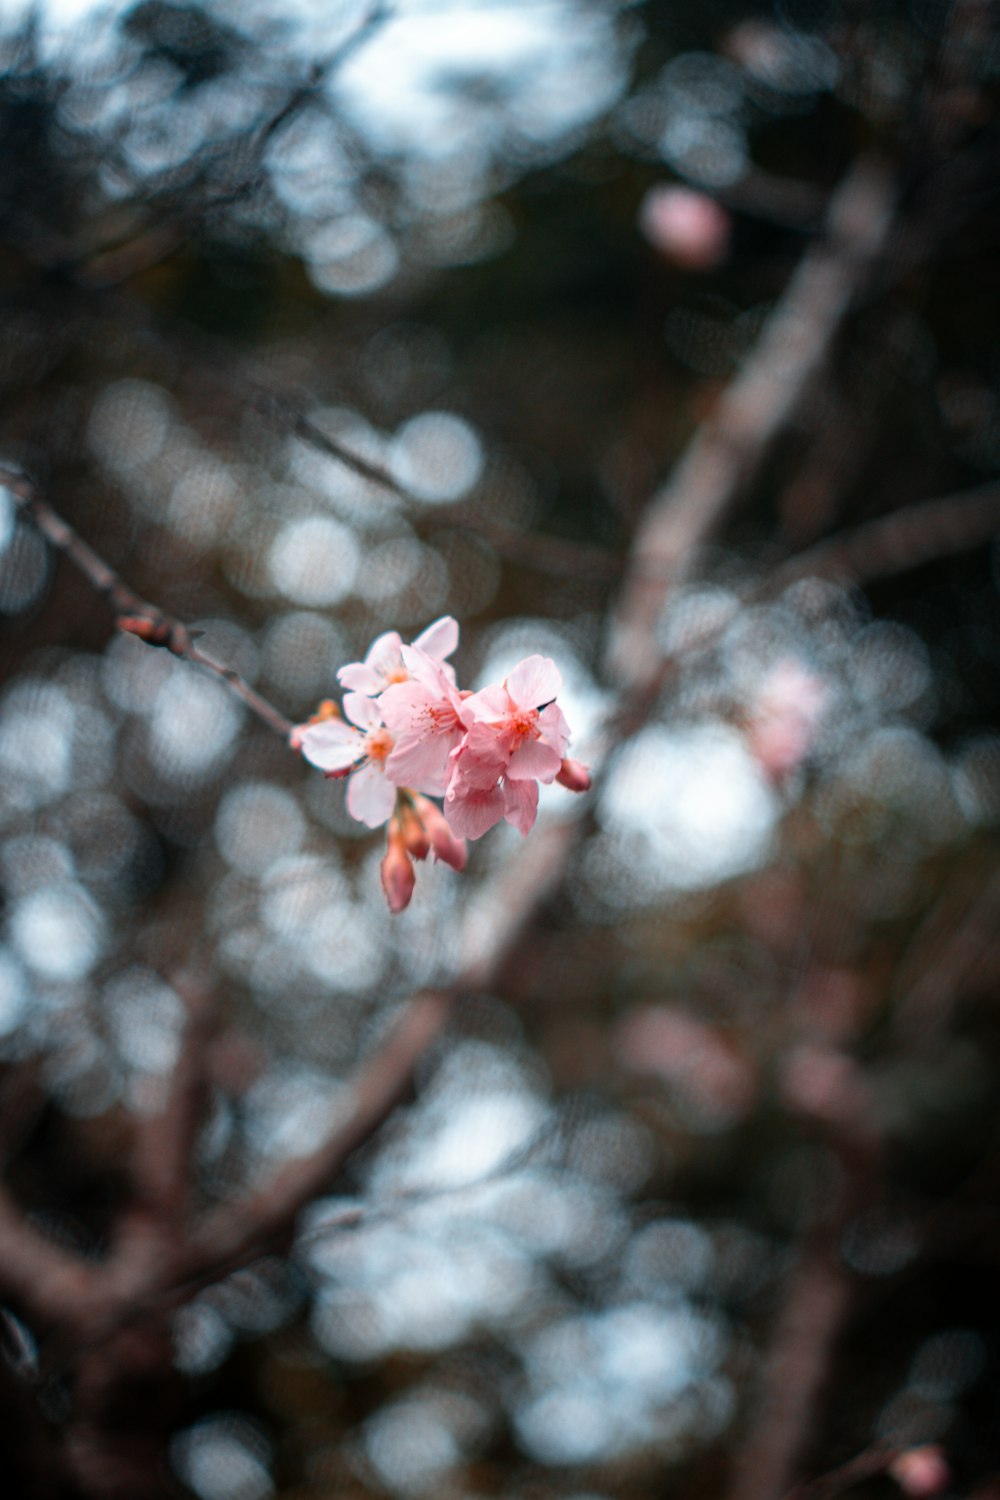 fiore di ciliegio rosa in fotografia ravvicinata